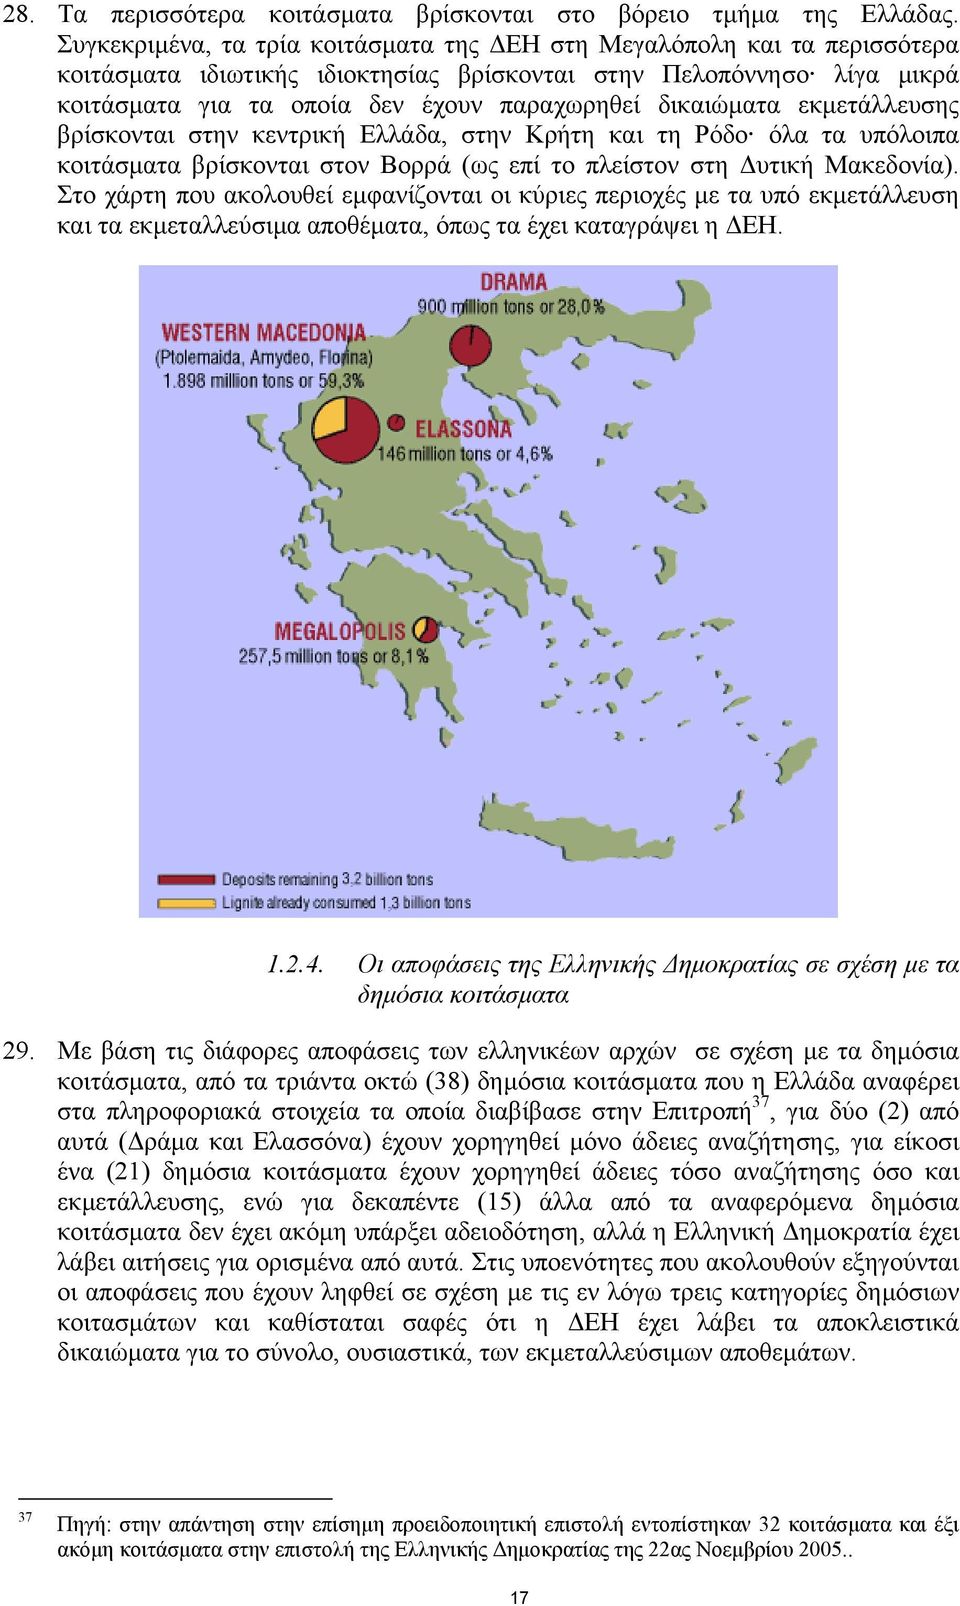 δικαιώµατα εκµετάλλευσης βρίσκονται στην κεντρική Ελλάδα, στην Κρήτη και τη Ρόδο όλα τα υπόλοιπα κοιτάσµατα βρίσκονται στον Βορρά (ως επί το πλείστον στη υτική Μακεδονία).